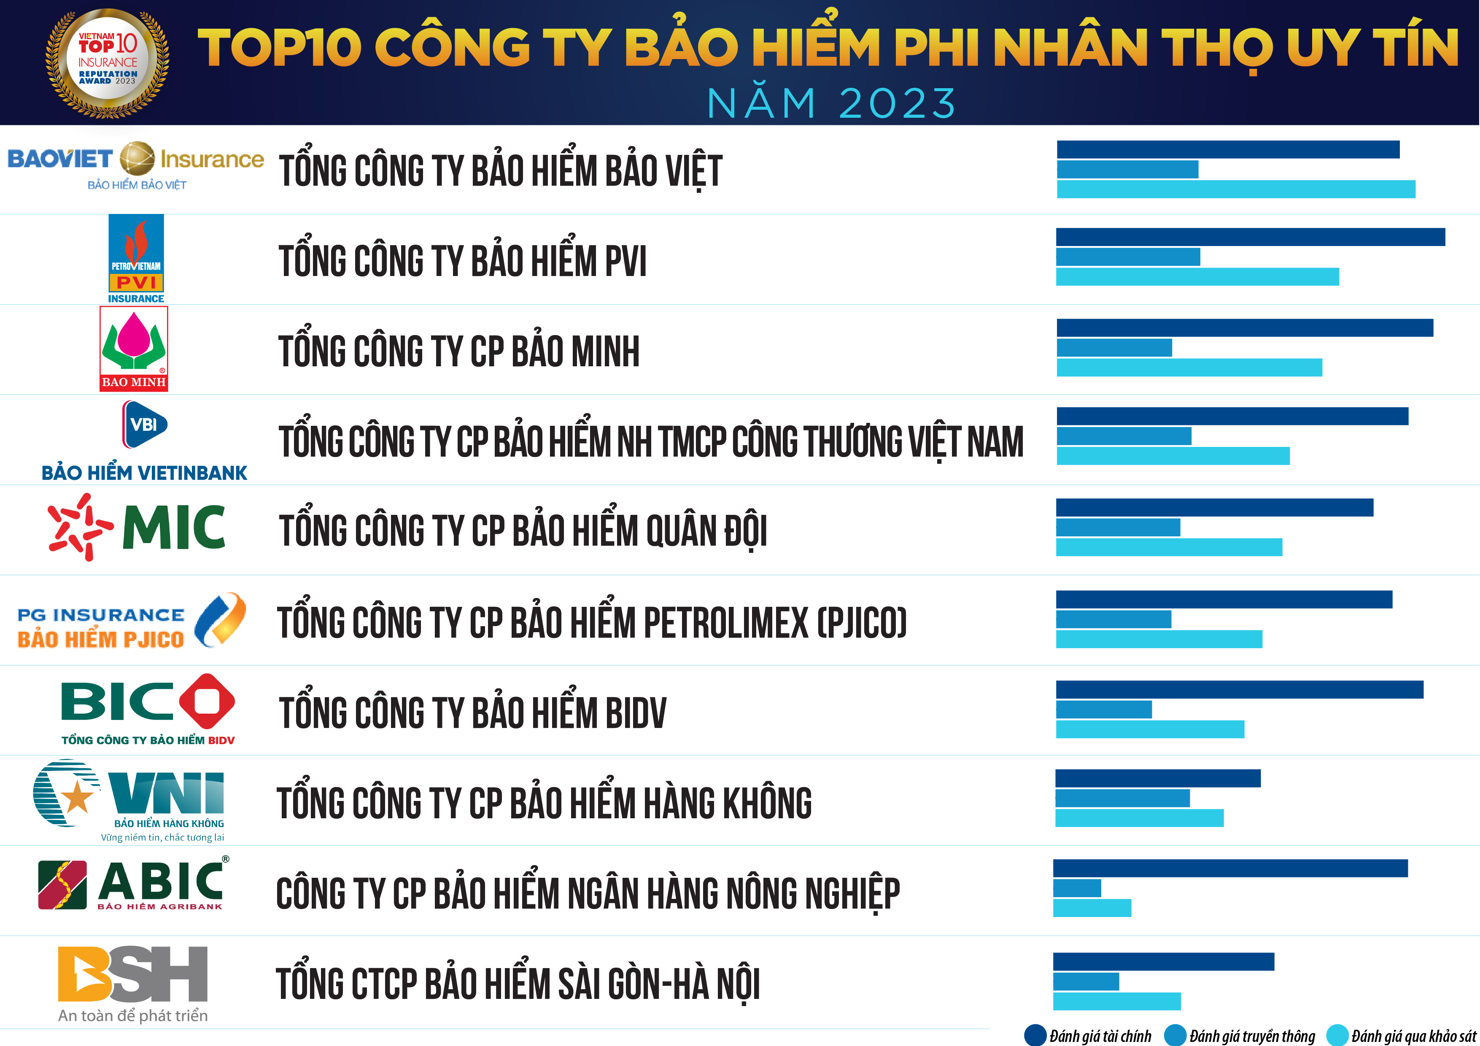 Top 10 C&ocirc;ng ty Bảo hiểm Phi nh&acirc;n thọ uy t&iacute;n năm 2023, th&aacute;ng 6/2023.&nbsp;Nguồn: Vietnam Report